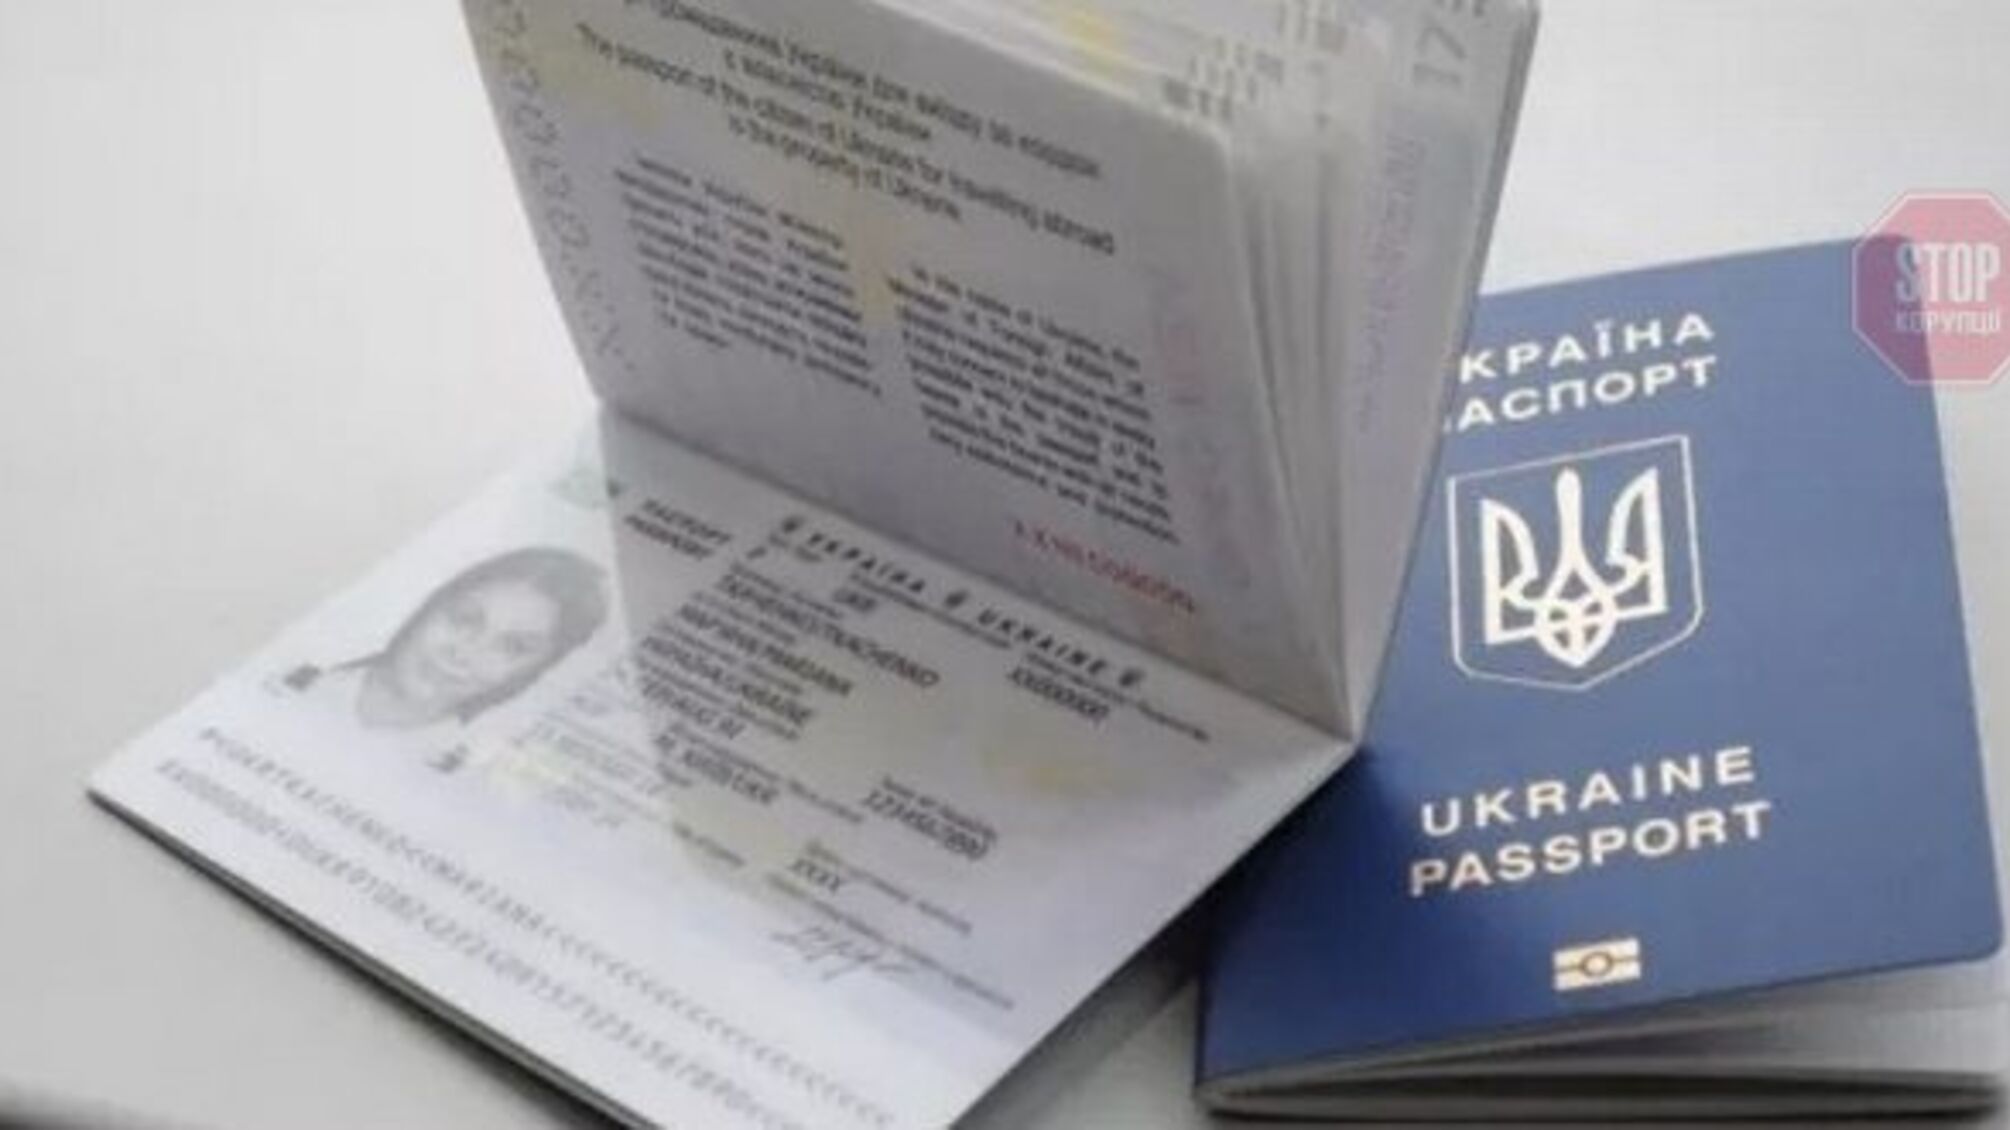 Рост цен на паспорта: 'Украина' заменила надежного европейского партнера скандальной компанией